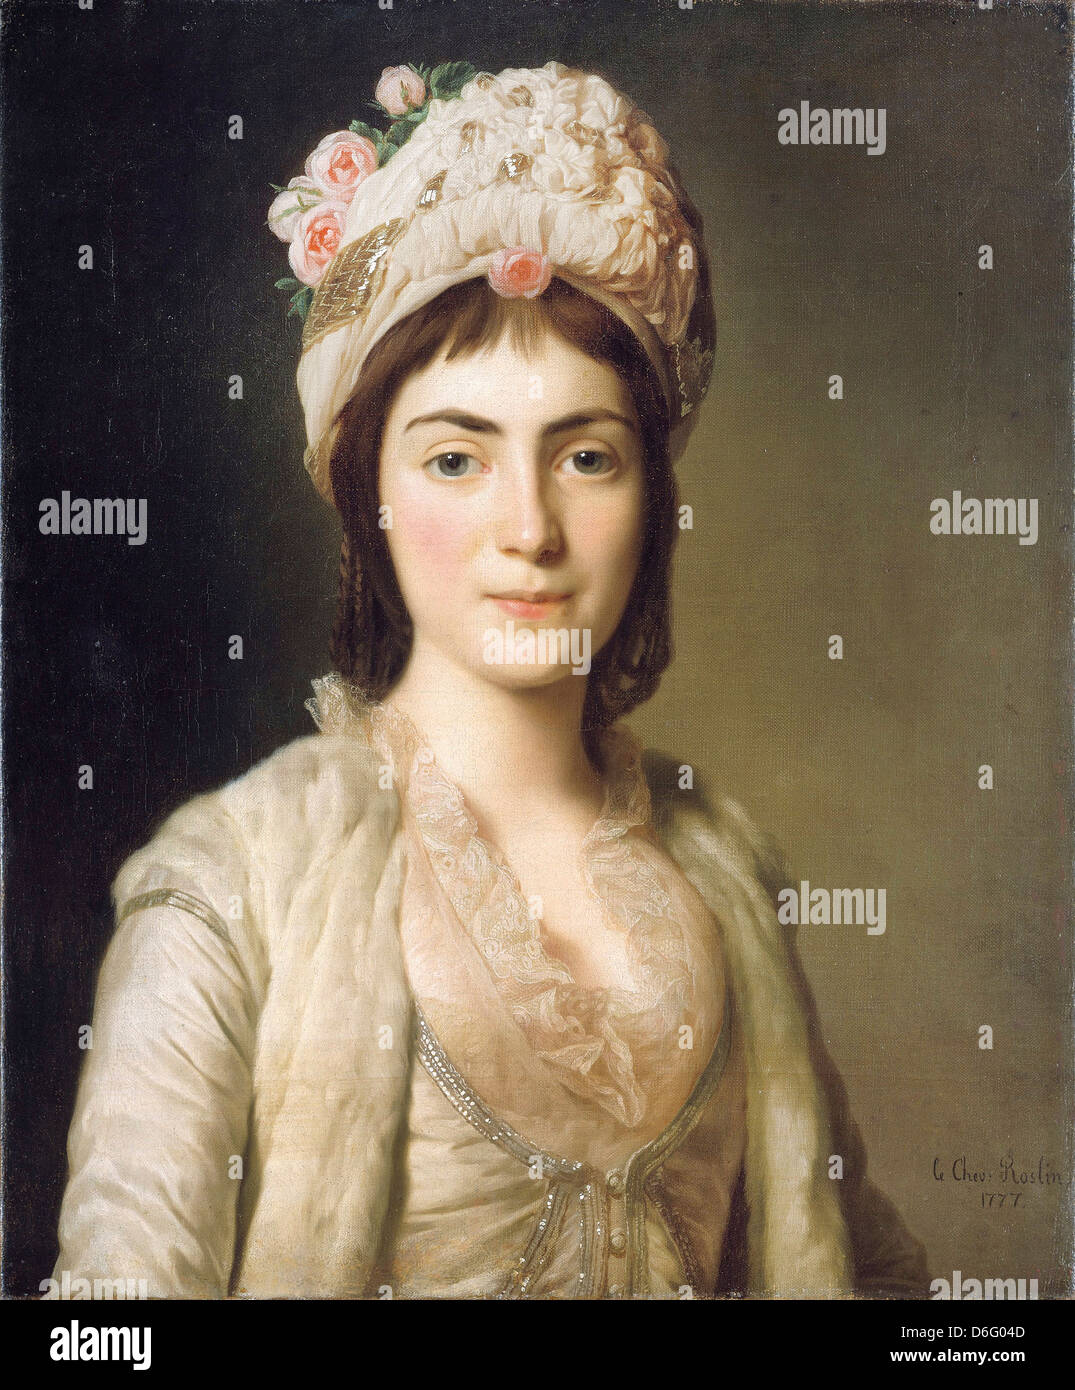 Alexander Roslin, Zoie Sophia, Princesse moldave 1785 Huile sur toile. Nationalmuseum, Stockholm, Suède Banque D'Images